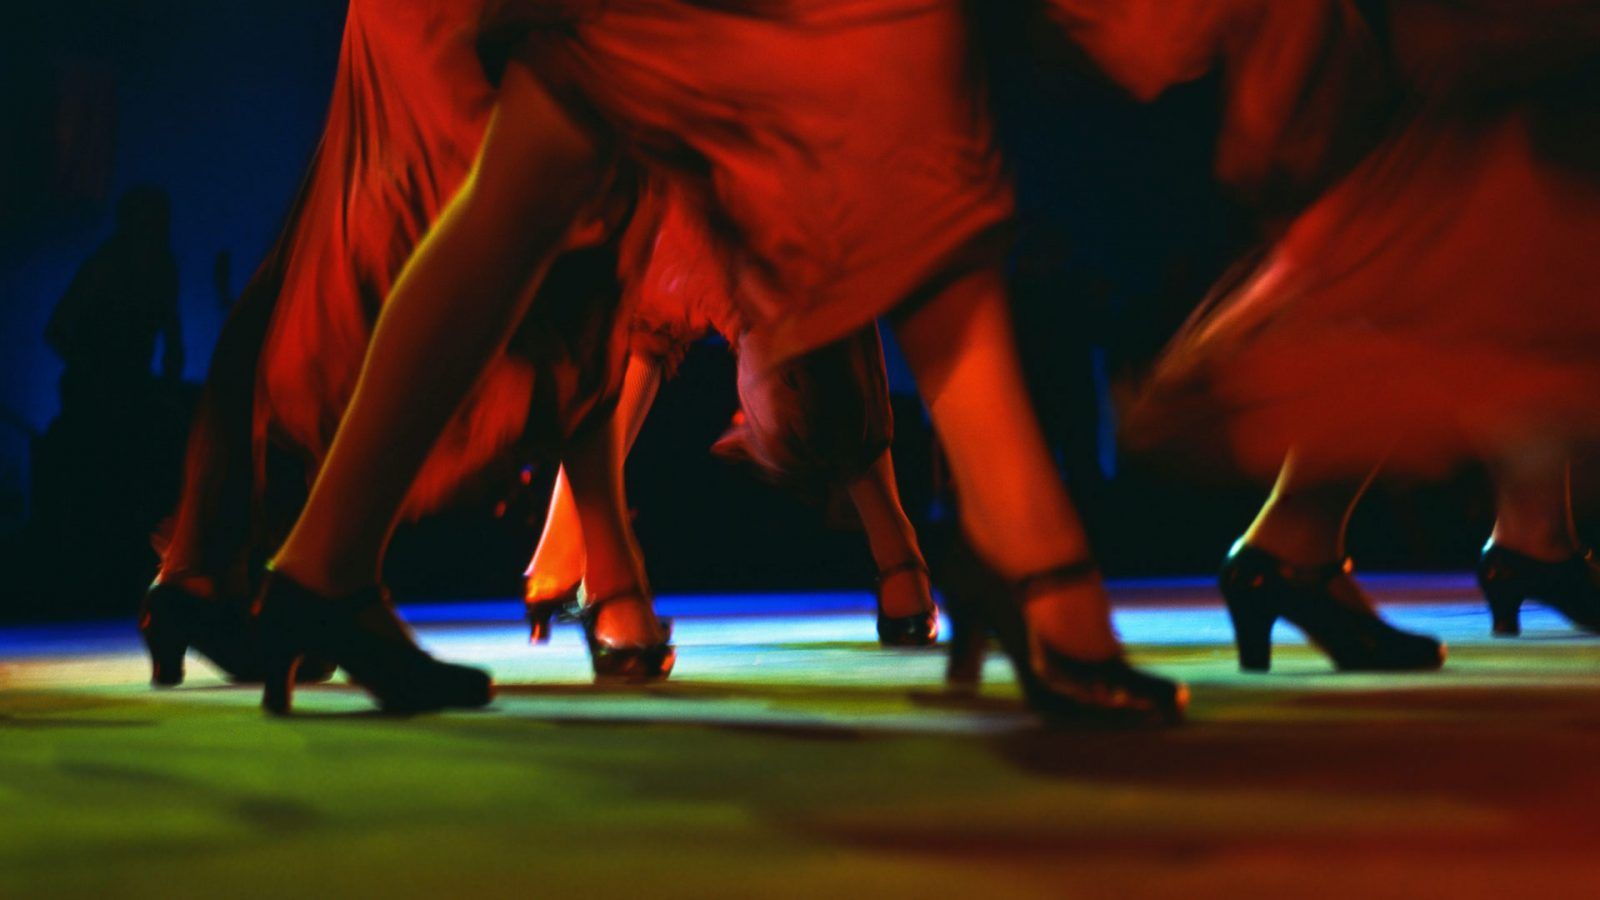 Flamenco Dance Performance - Bing Descarga de fondos de pantalla